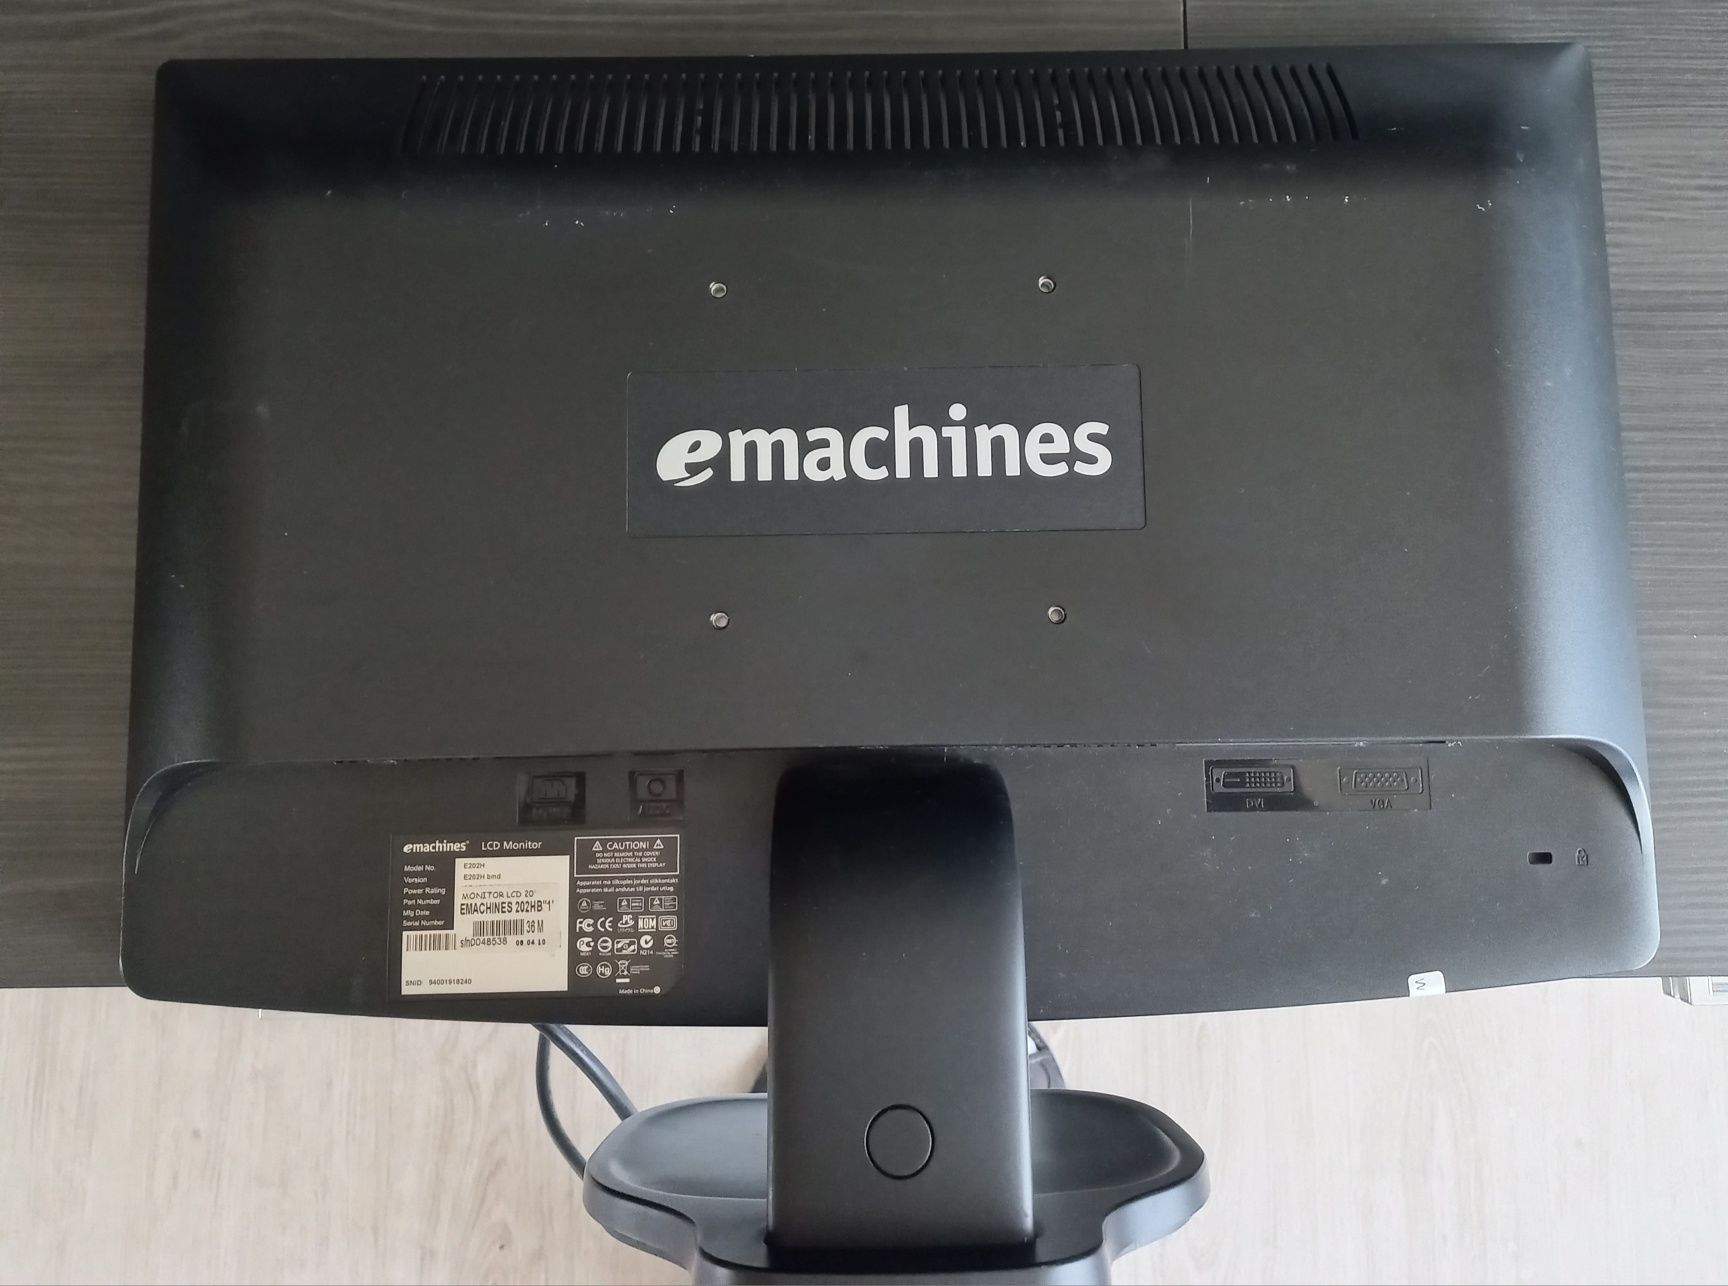 Monitor emachines 202hb1